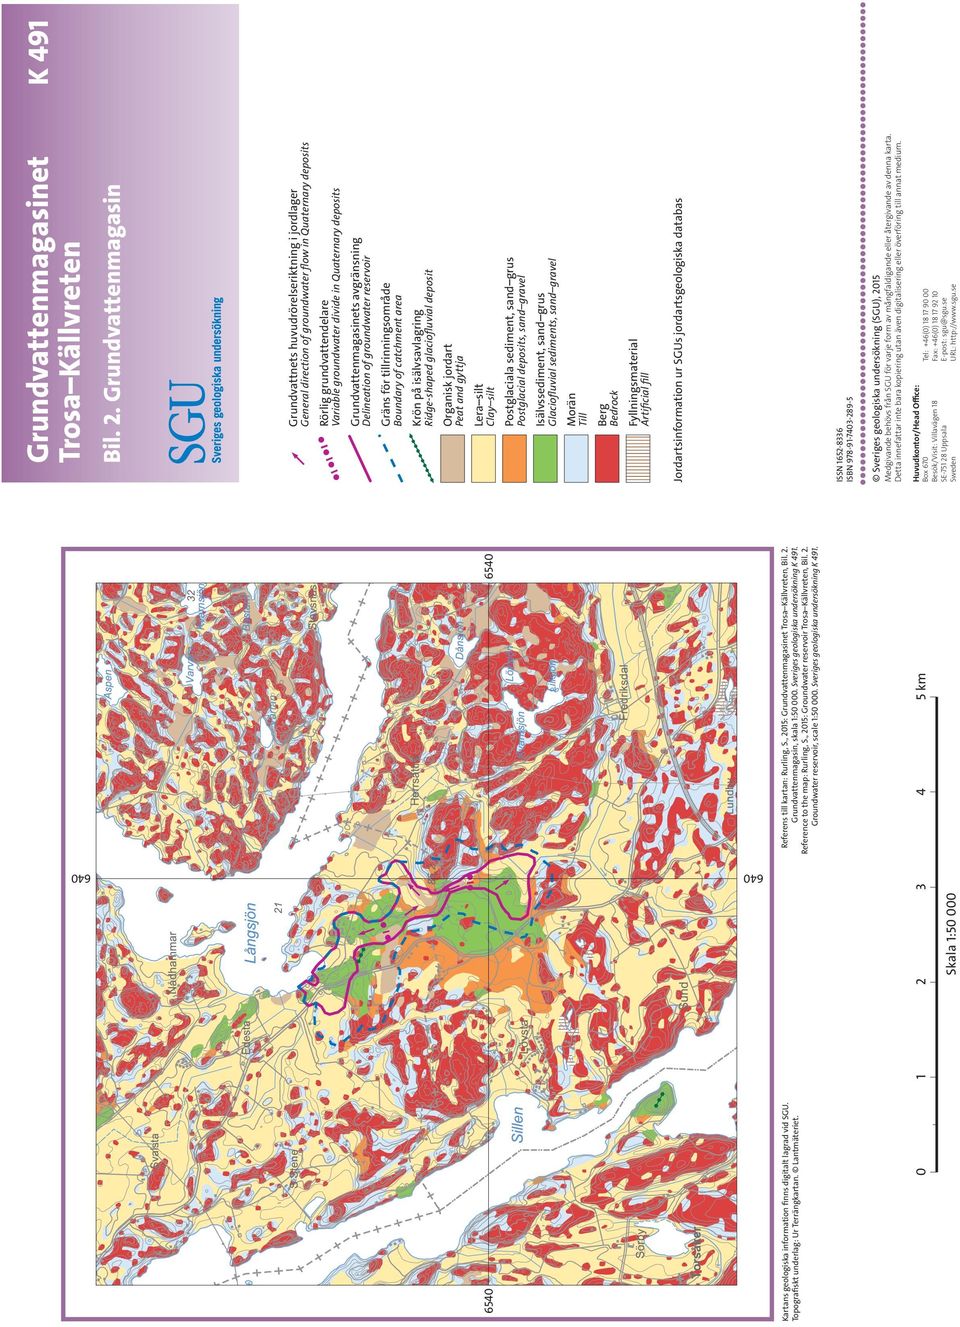 , 2015: Groundwater reservoir Trosa Källvreten, Bil. 2. Groundwater reservoir, scale 1:50 000. Sveriges geologiska undersökning K 491.